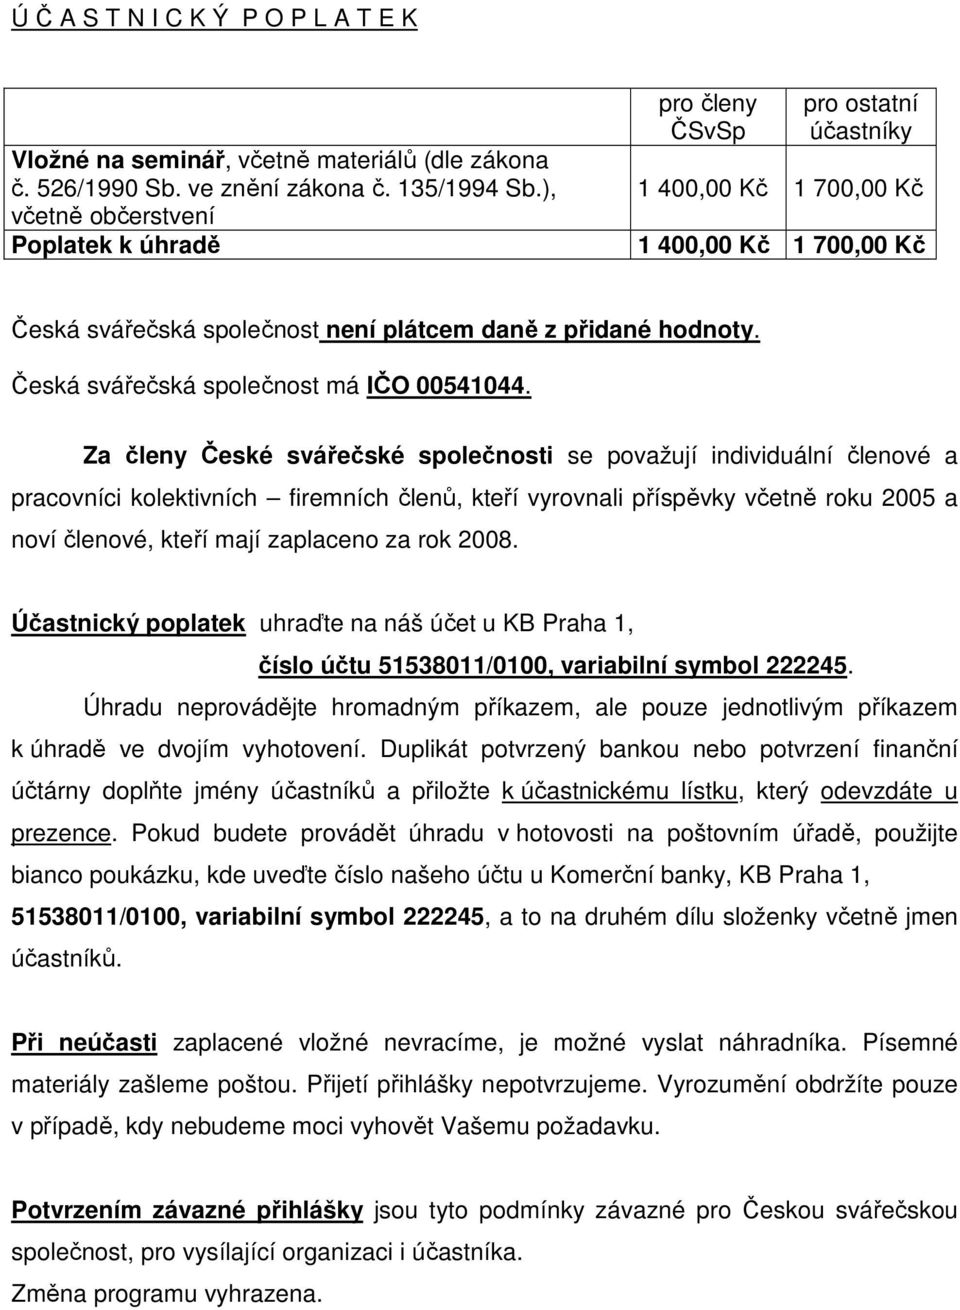 Česká svářečská společnost má IČO 00541044.